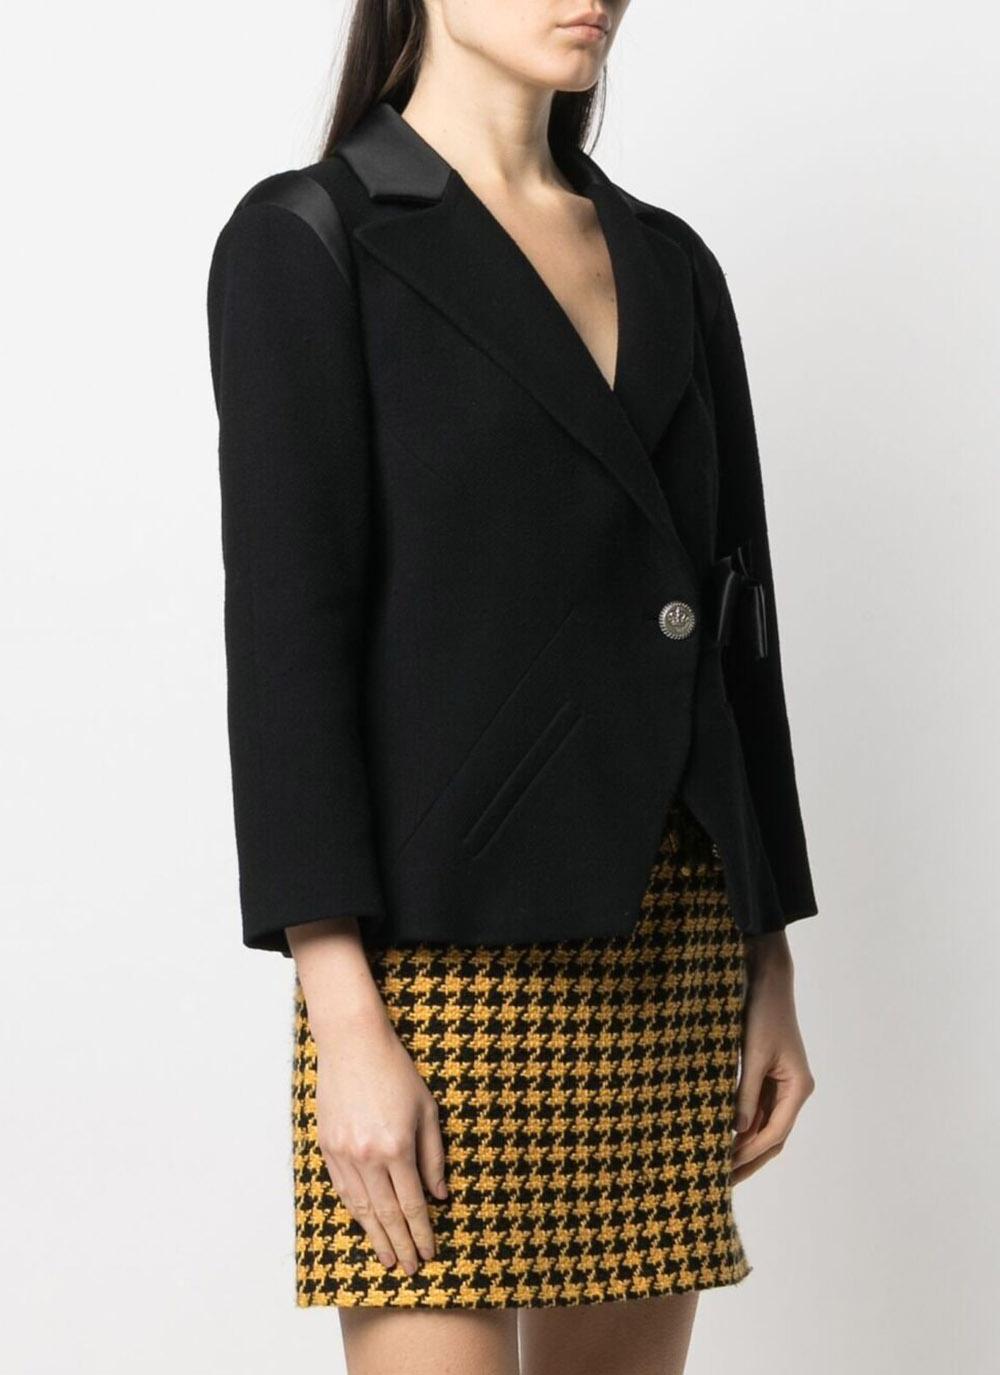 Chanel New Paris / London Runway Black Tweed Jacket For Sale 1